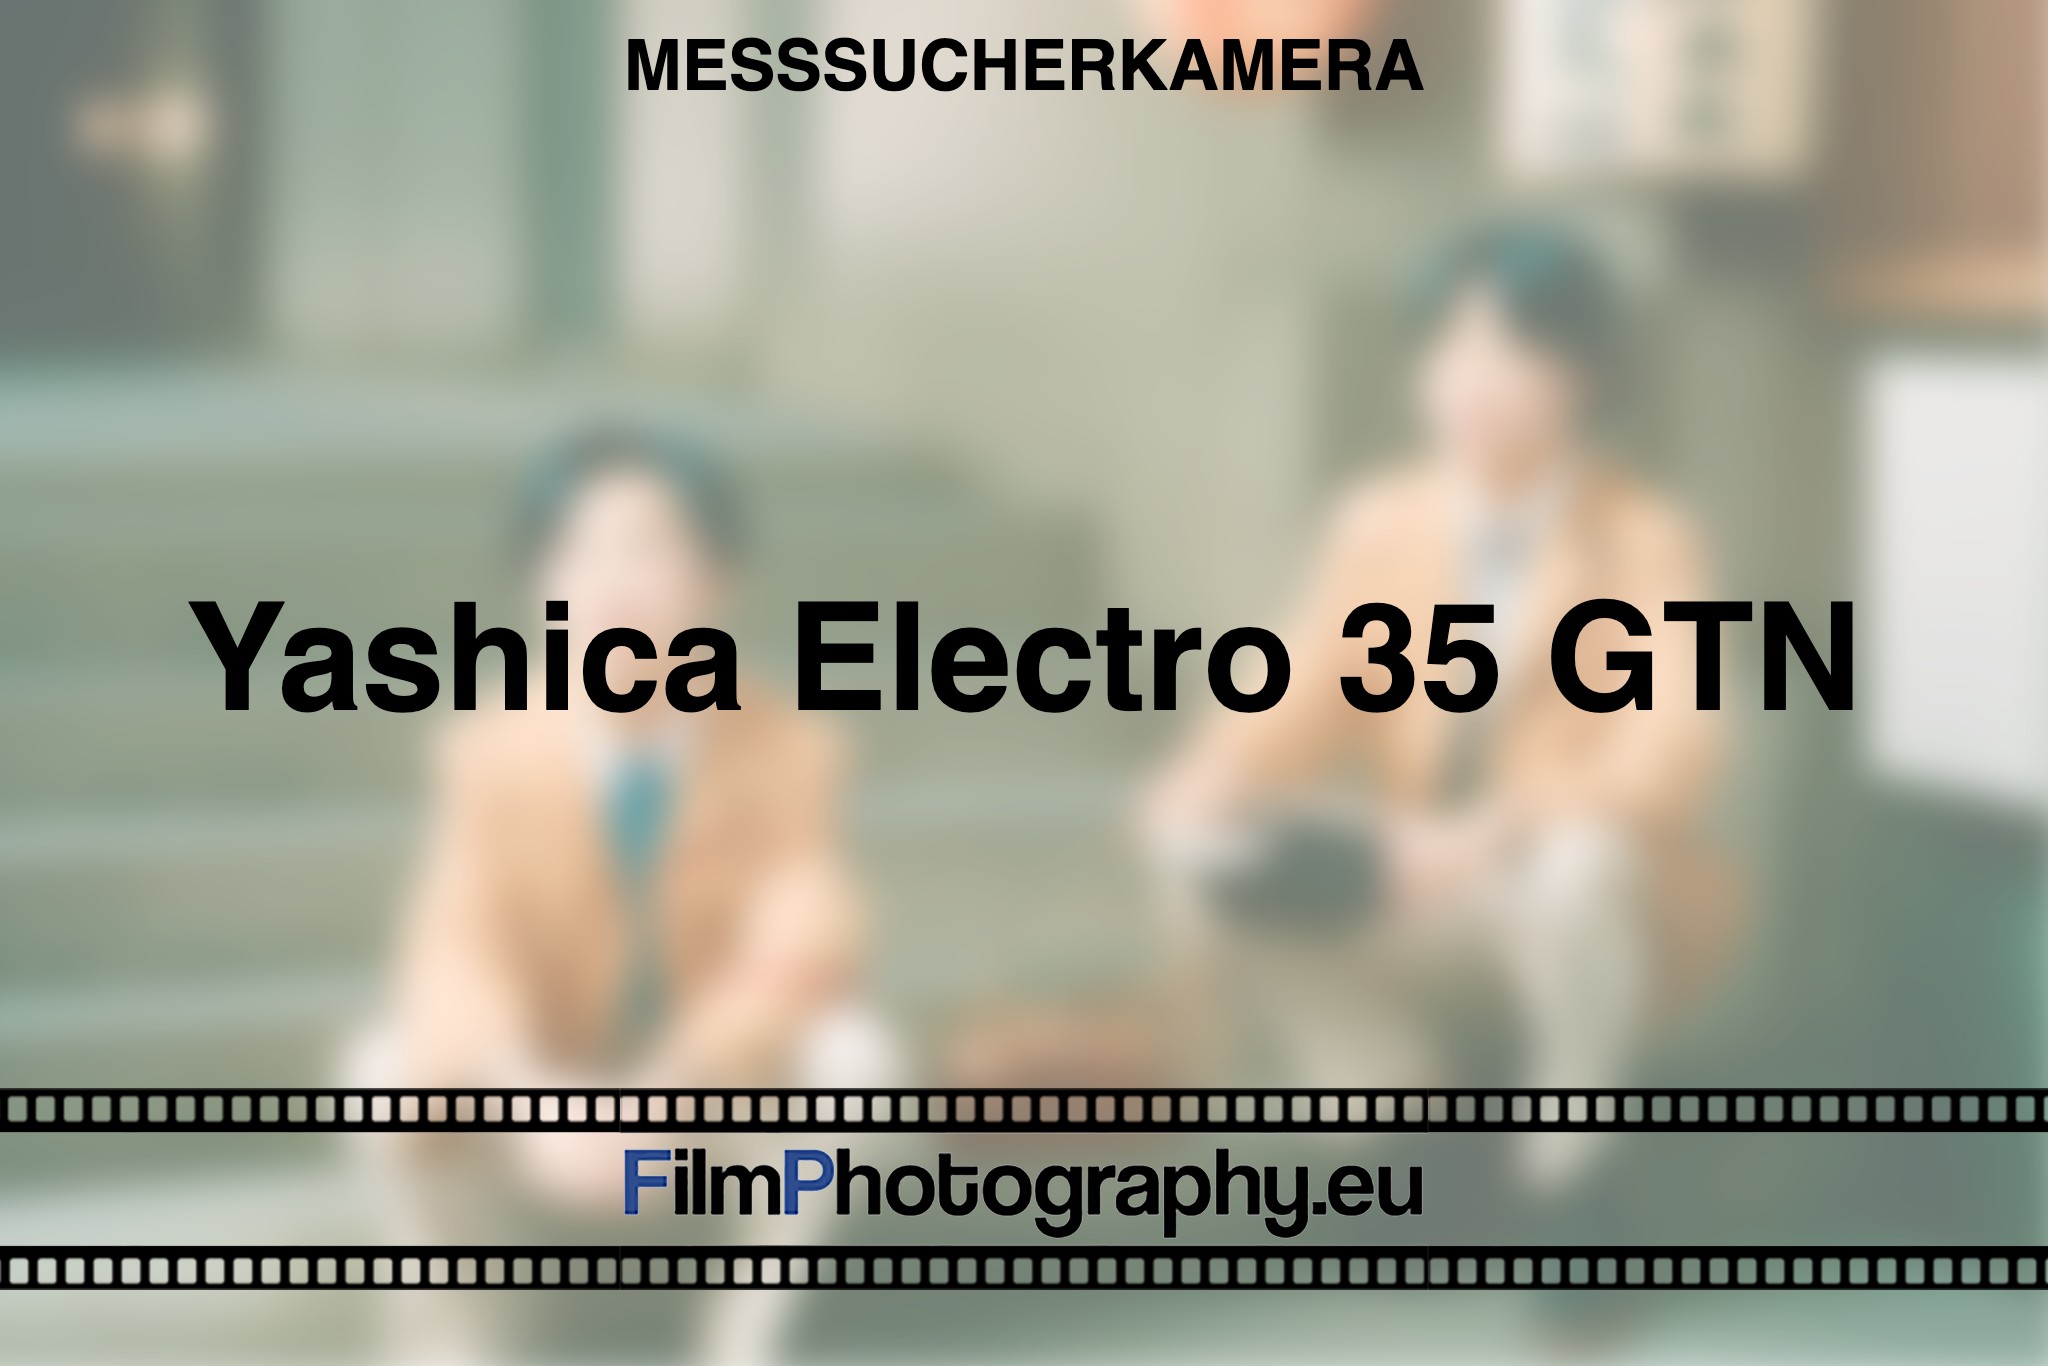 yashica-electro-35-gtn-messsucherkamera-bnv